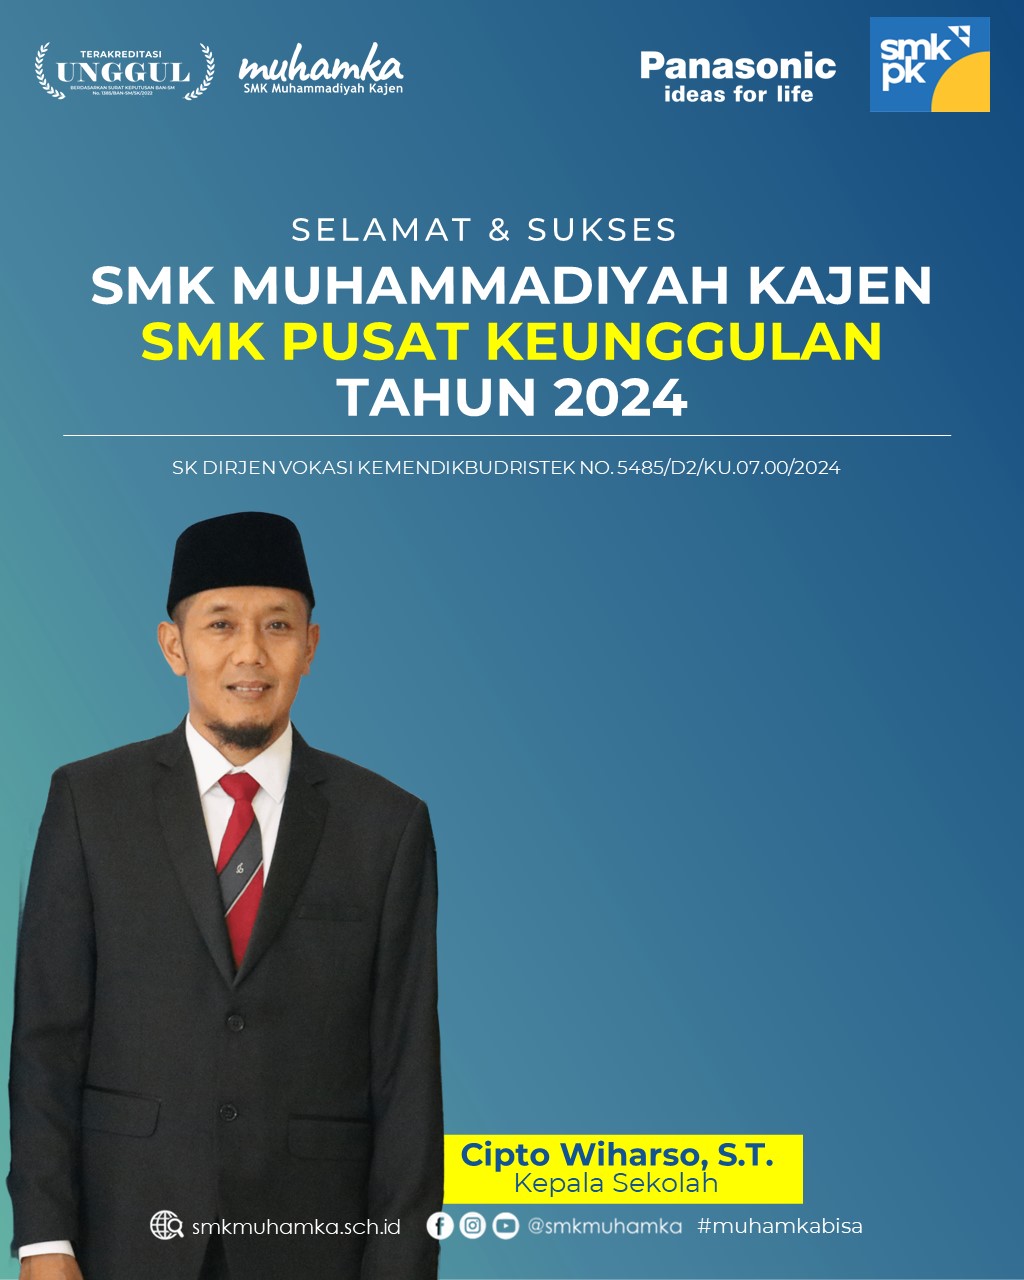 Selamat SMK PK